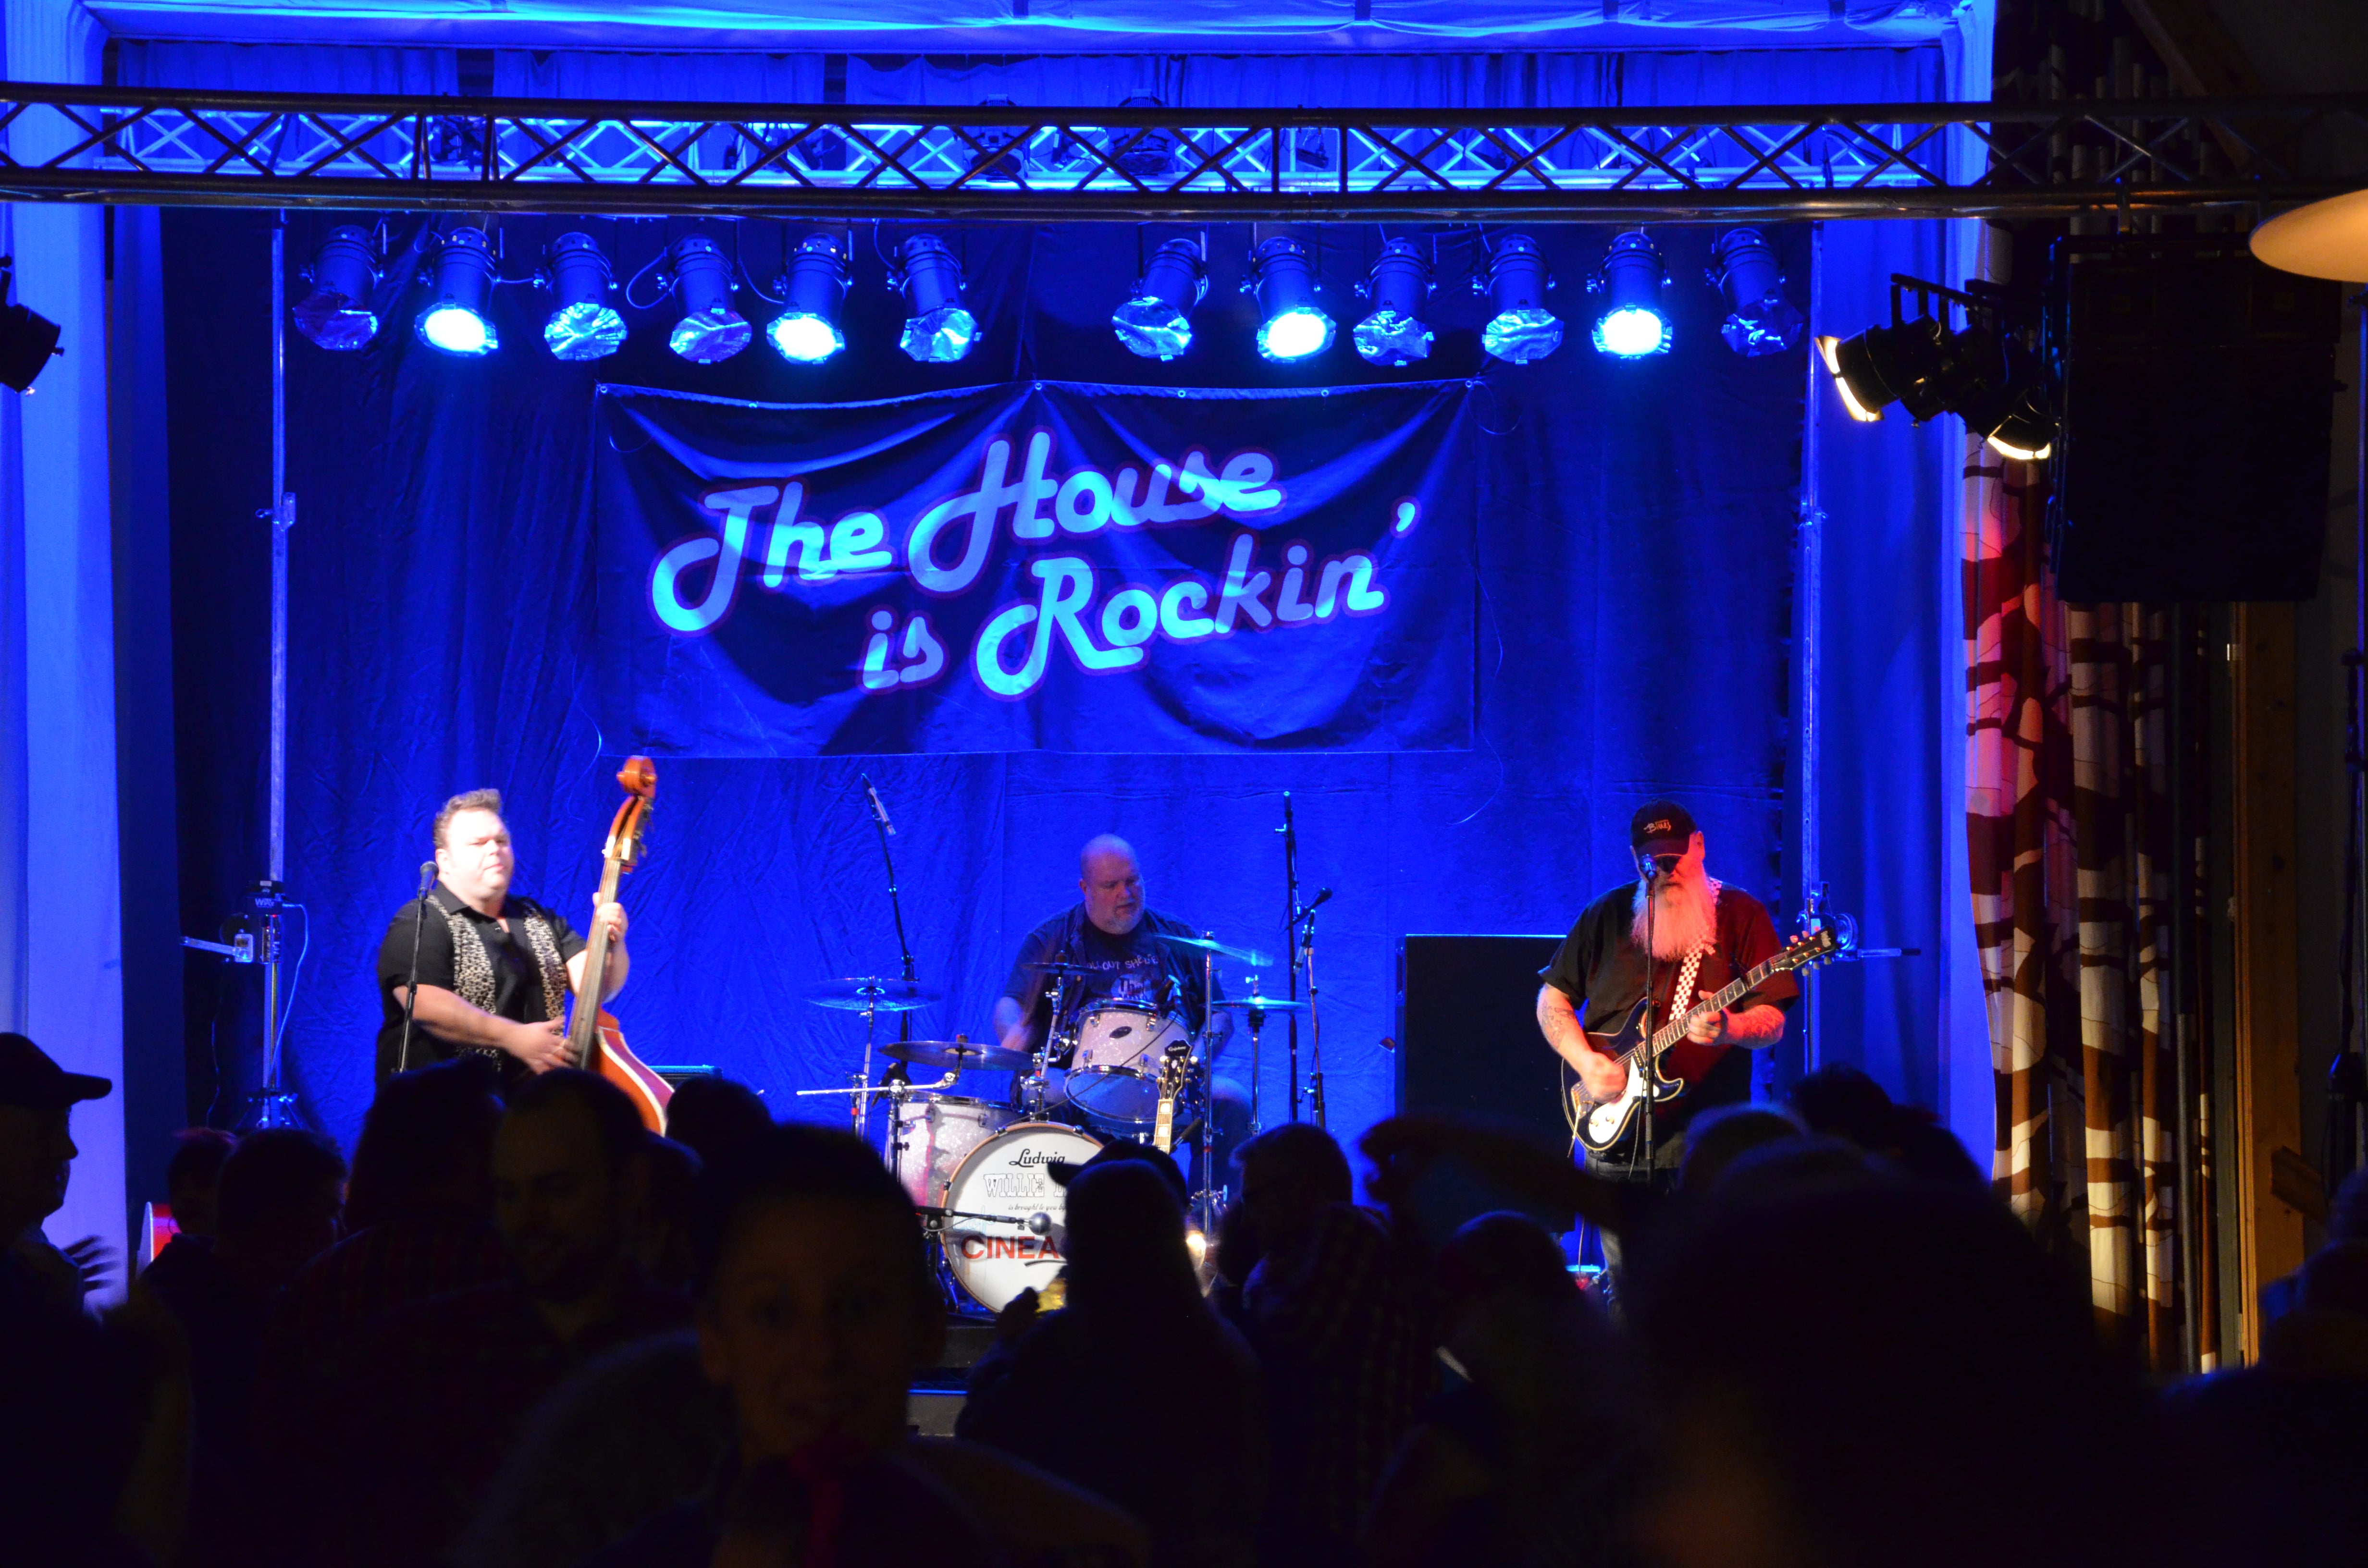 Hank T Morris, The House is Rockin' 2014